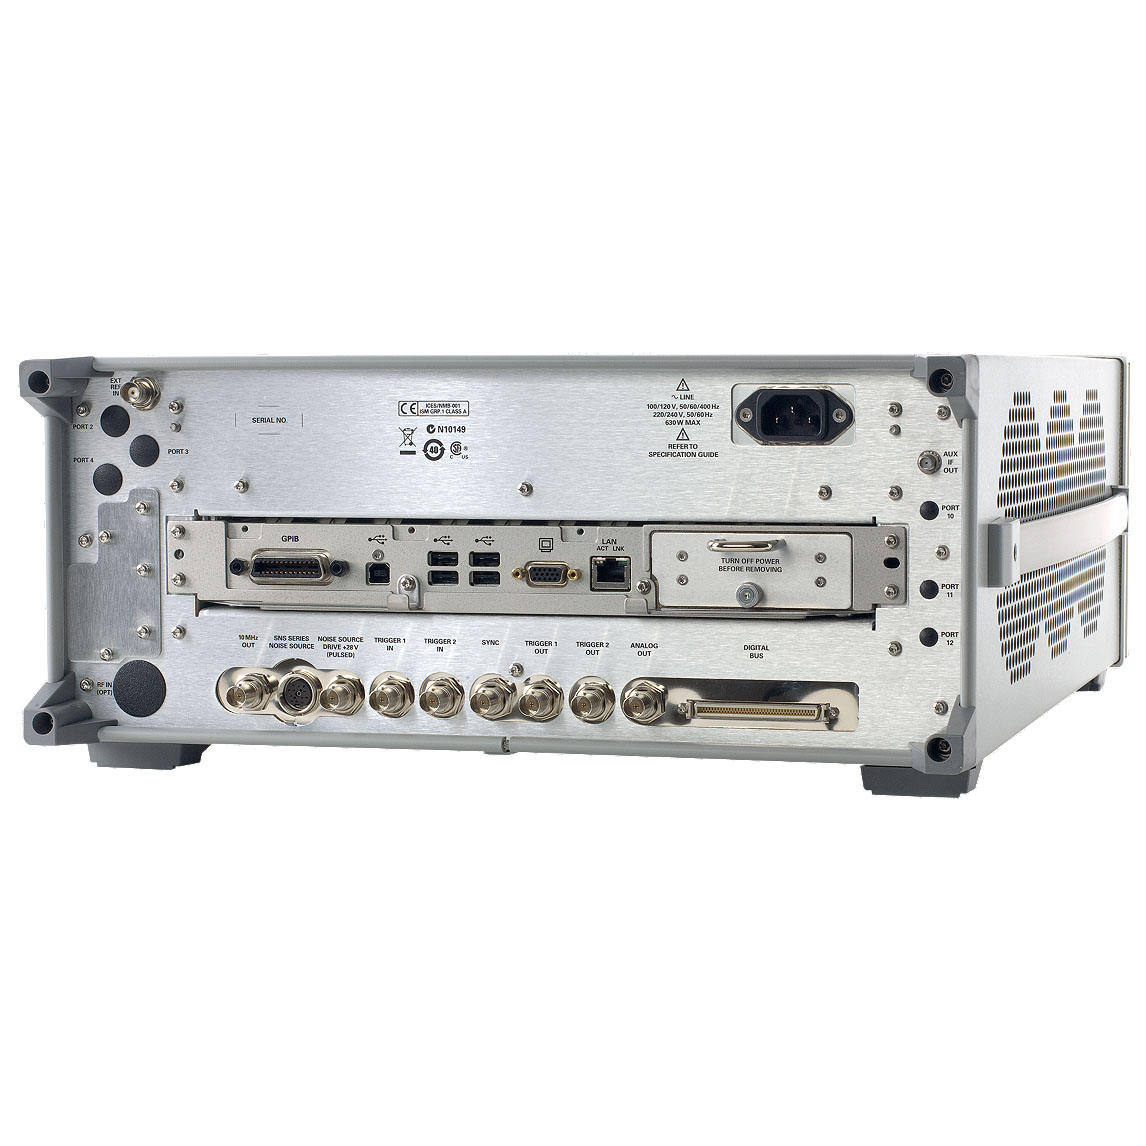 N9030A : Анализатор сигналов PXA от 3 Гц до 50 ГГц